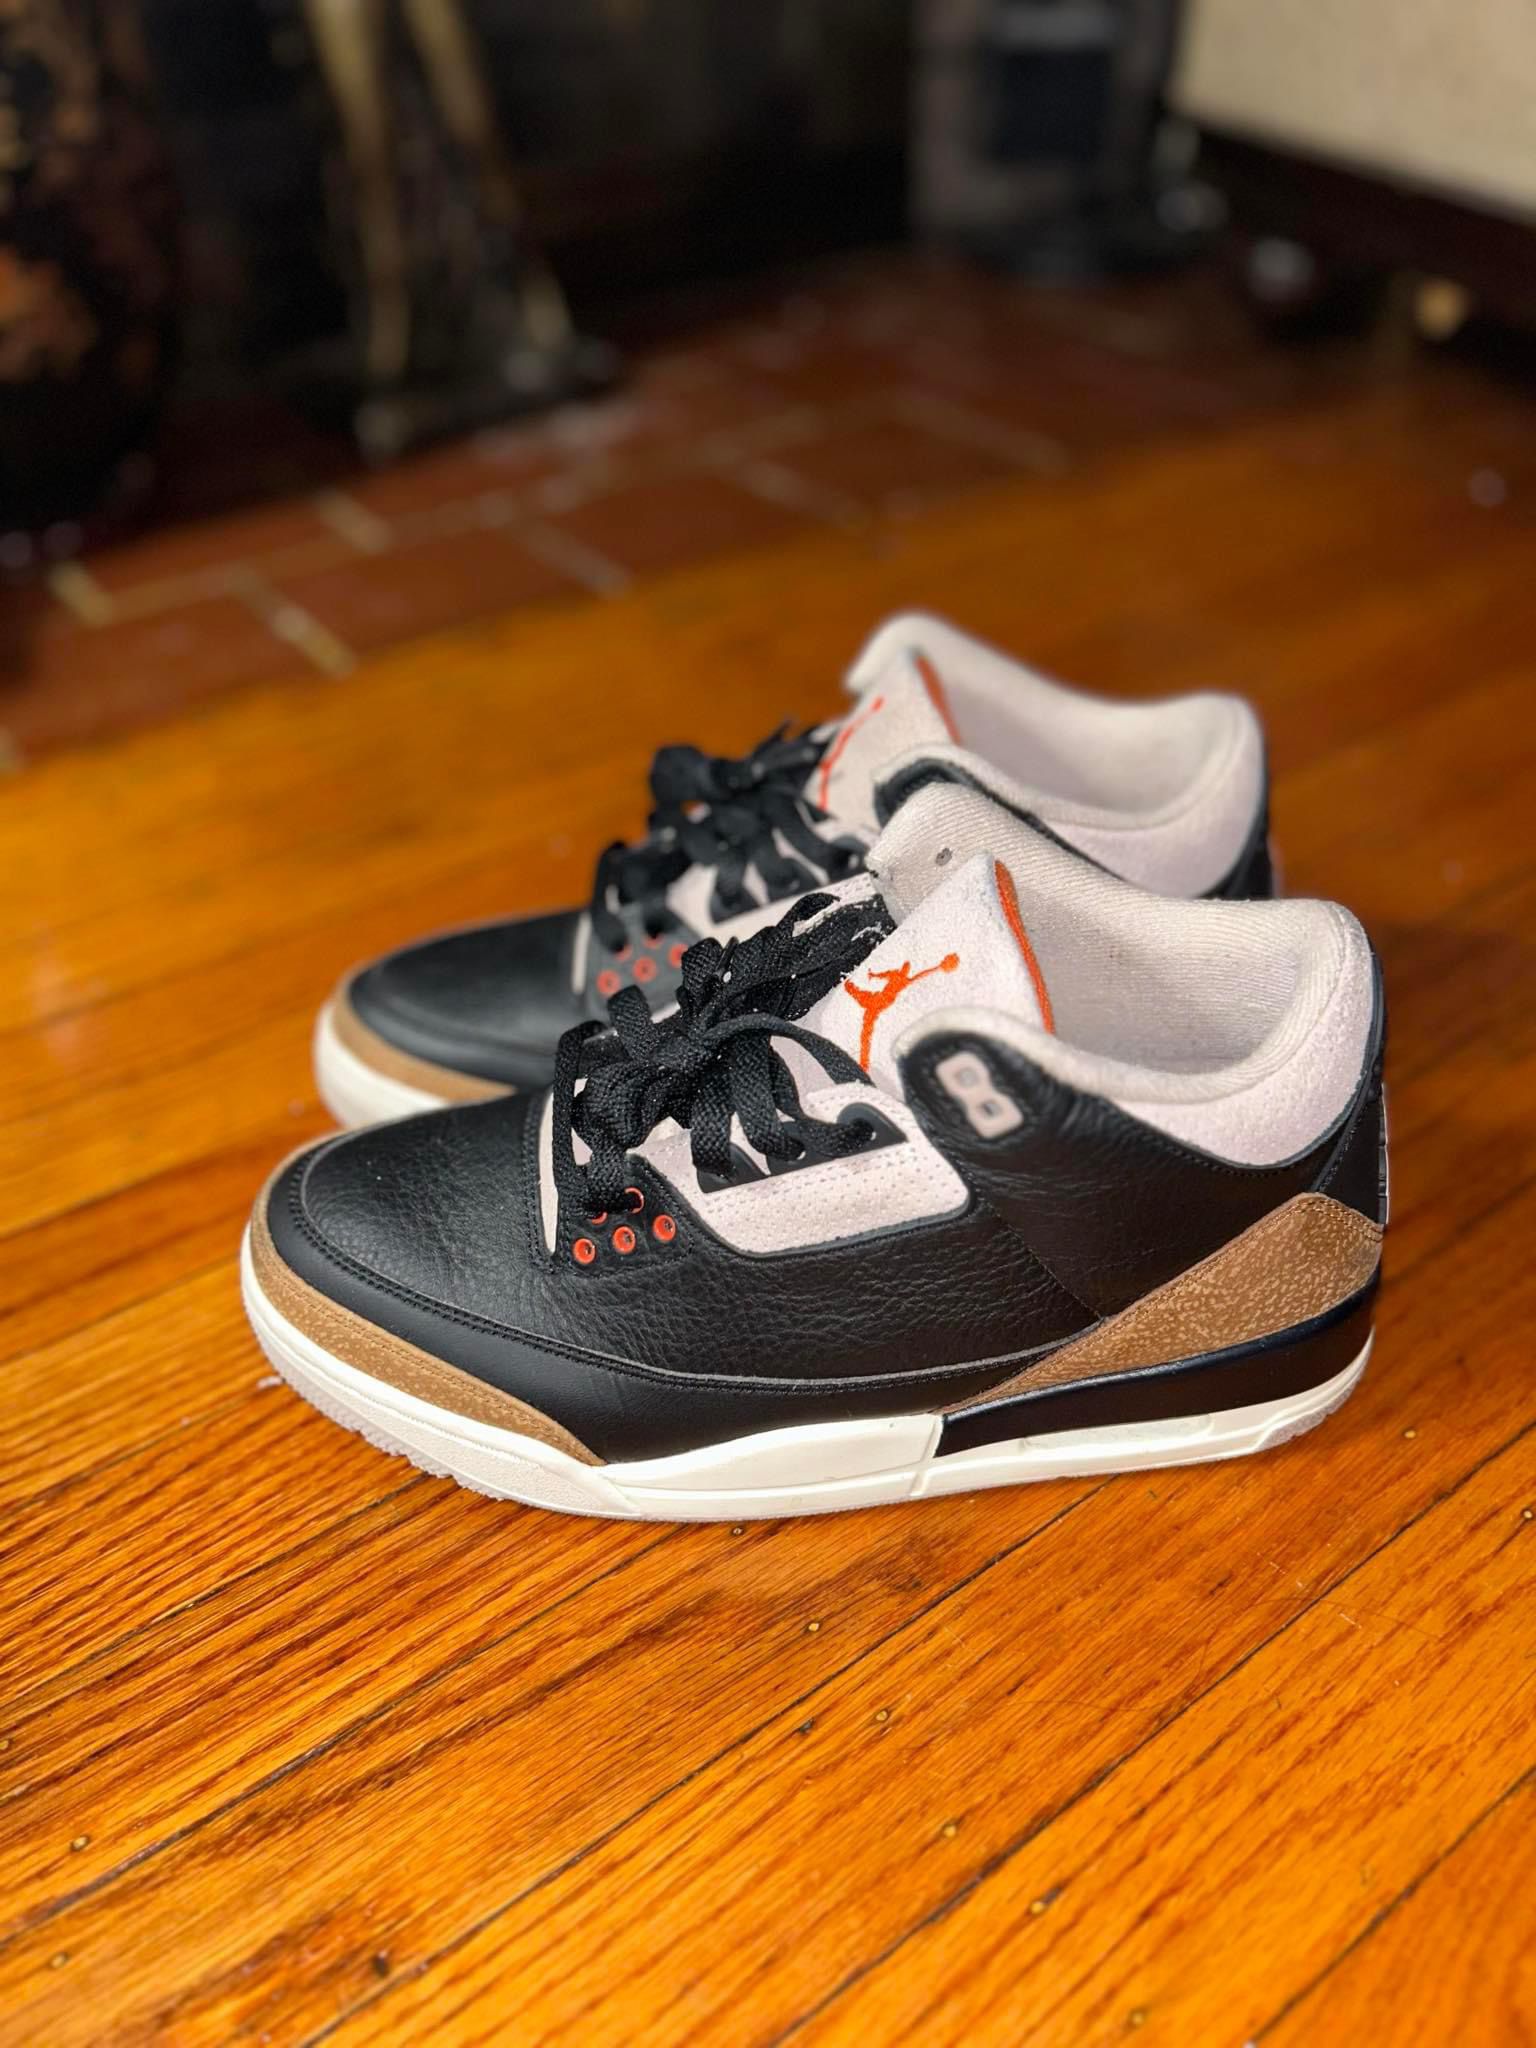 Air Jordan 3s Men’s Size 9.5